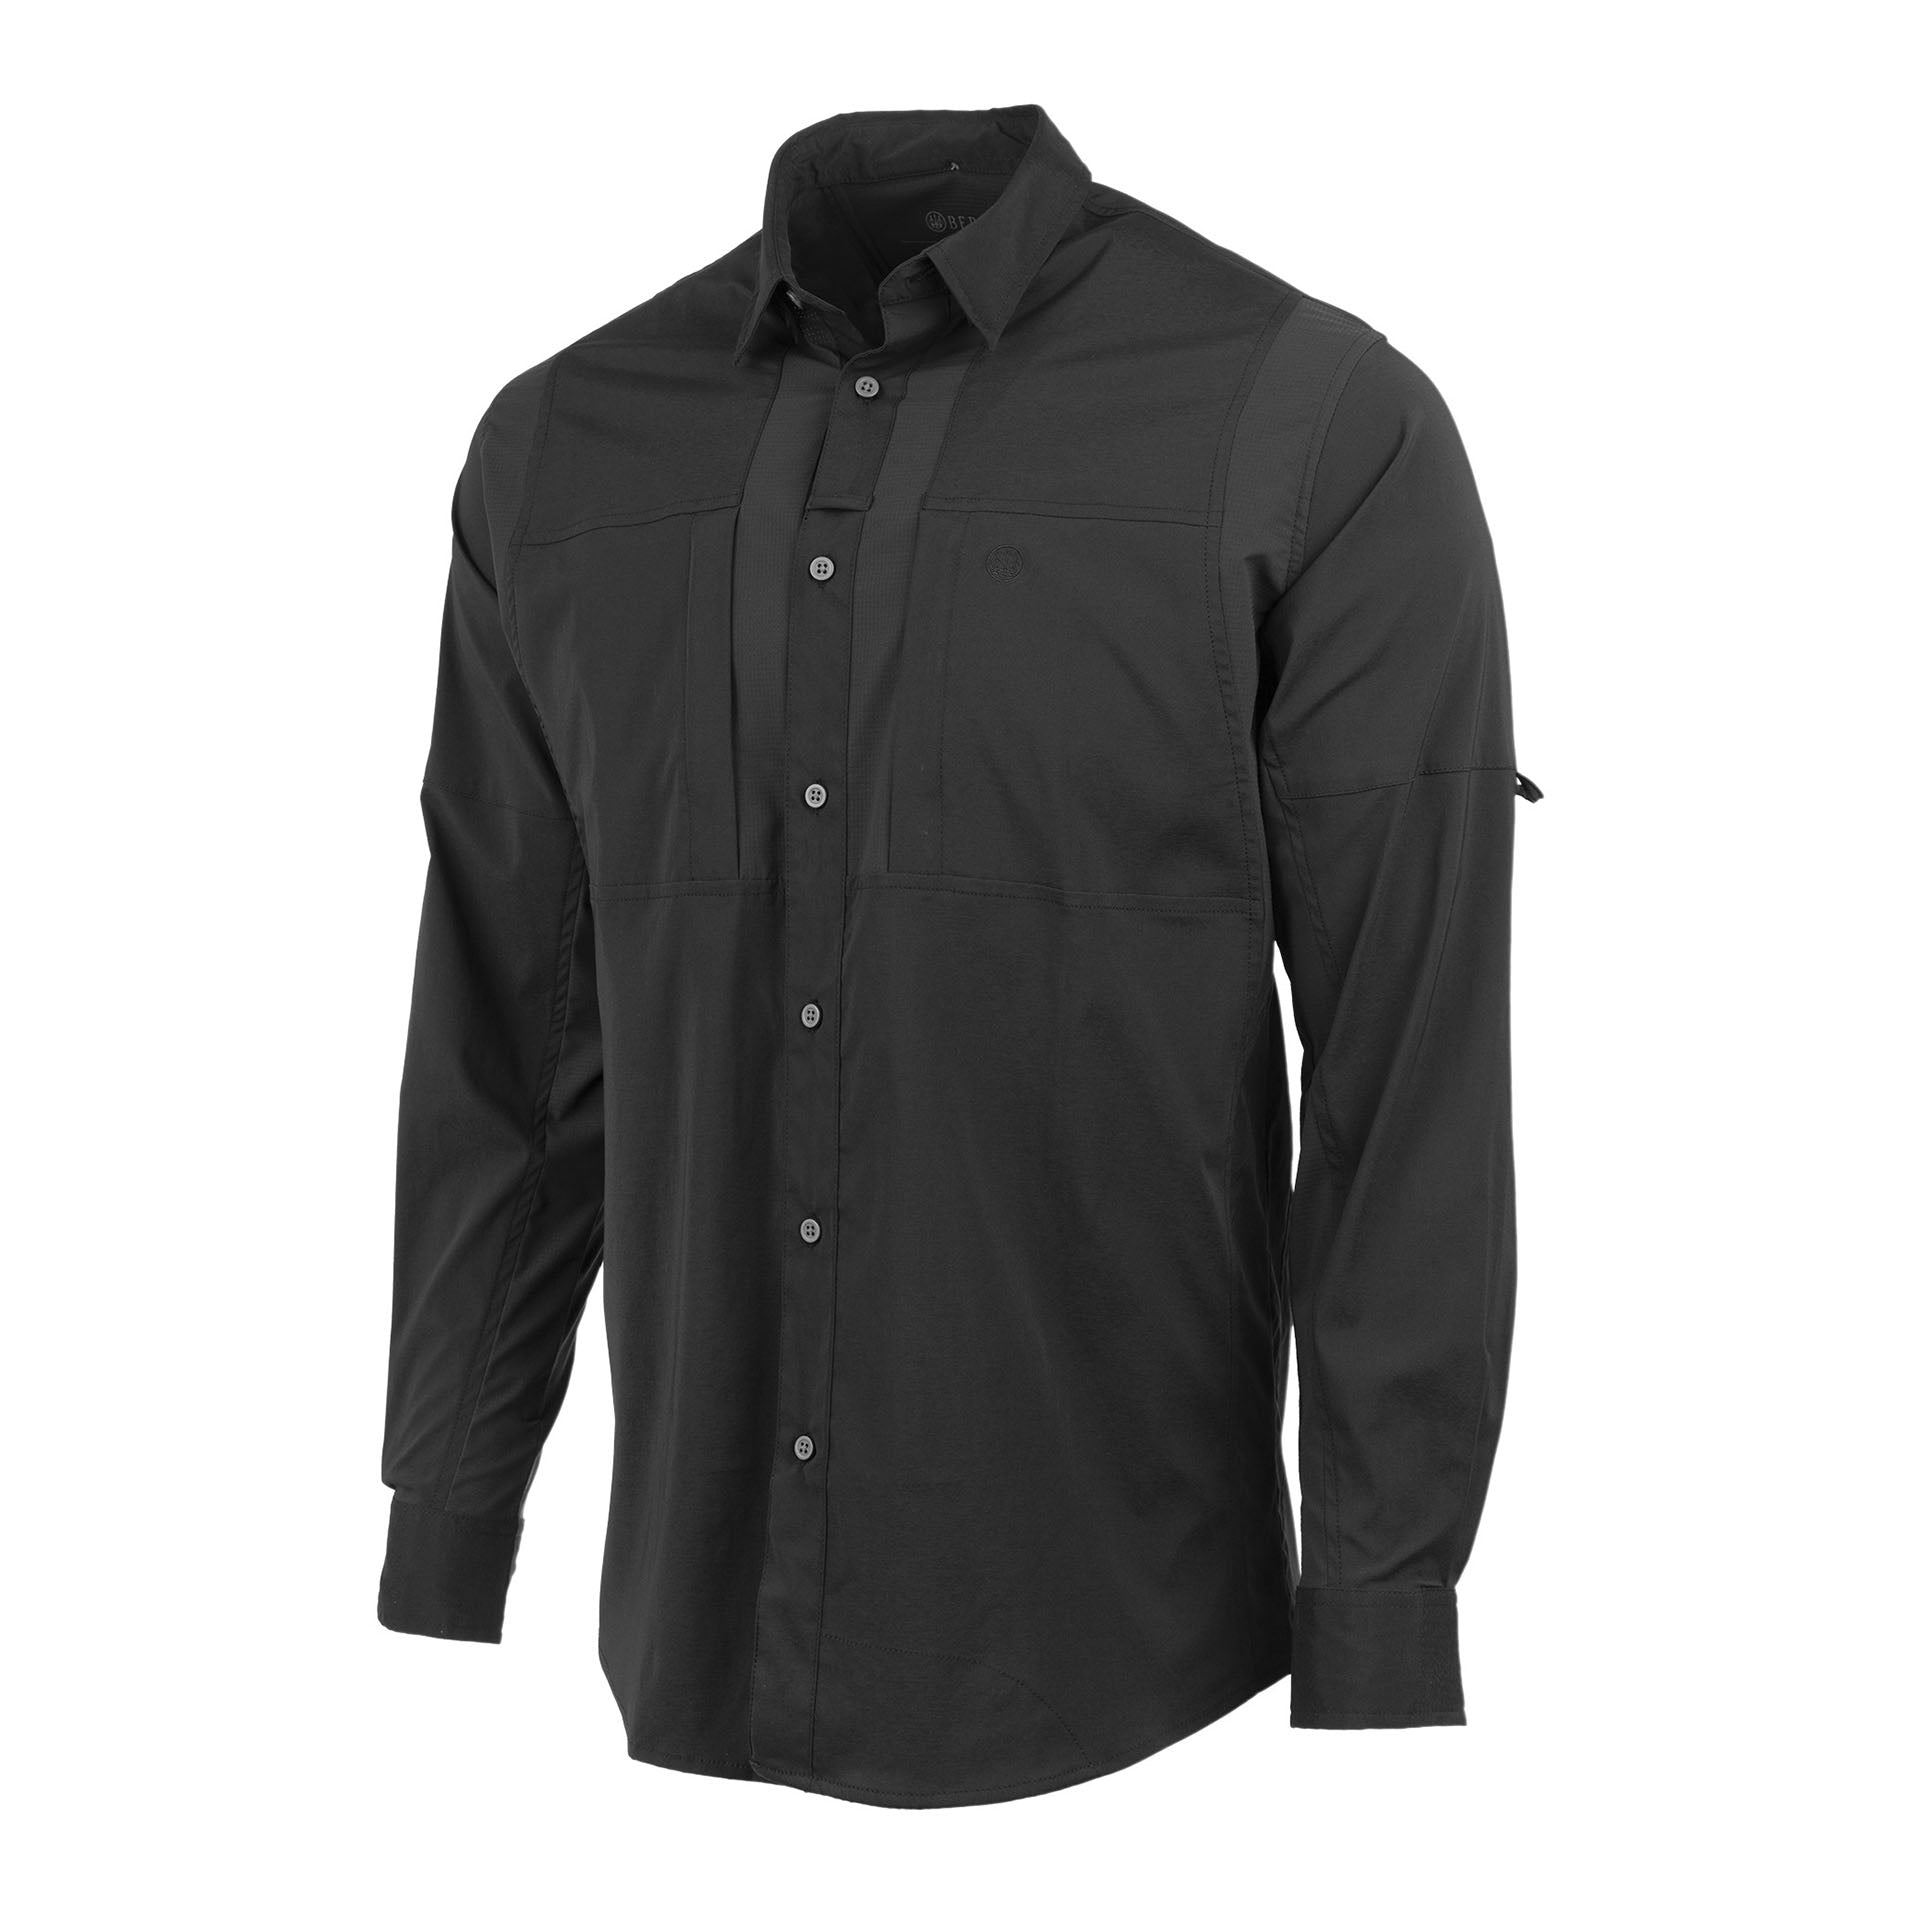 TKAD Flex Shirt - Black – Beretta Gallery USA